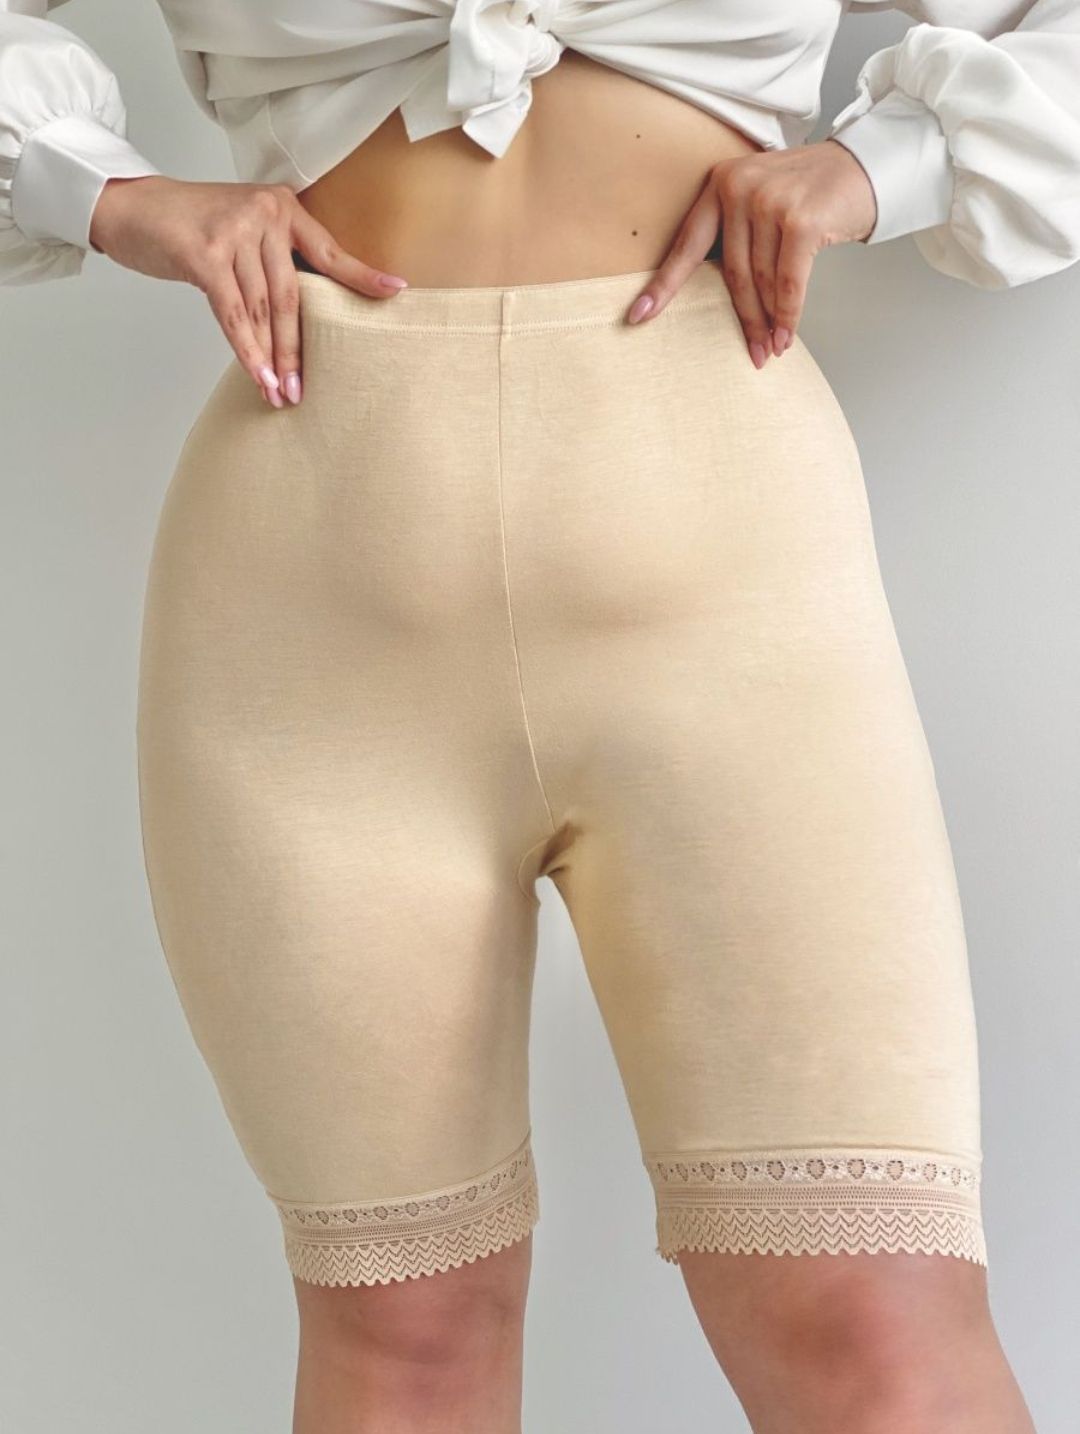 дрочка в женские панталоны фото 110